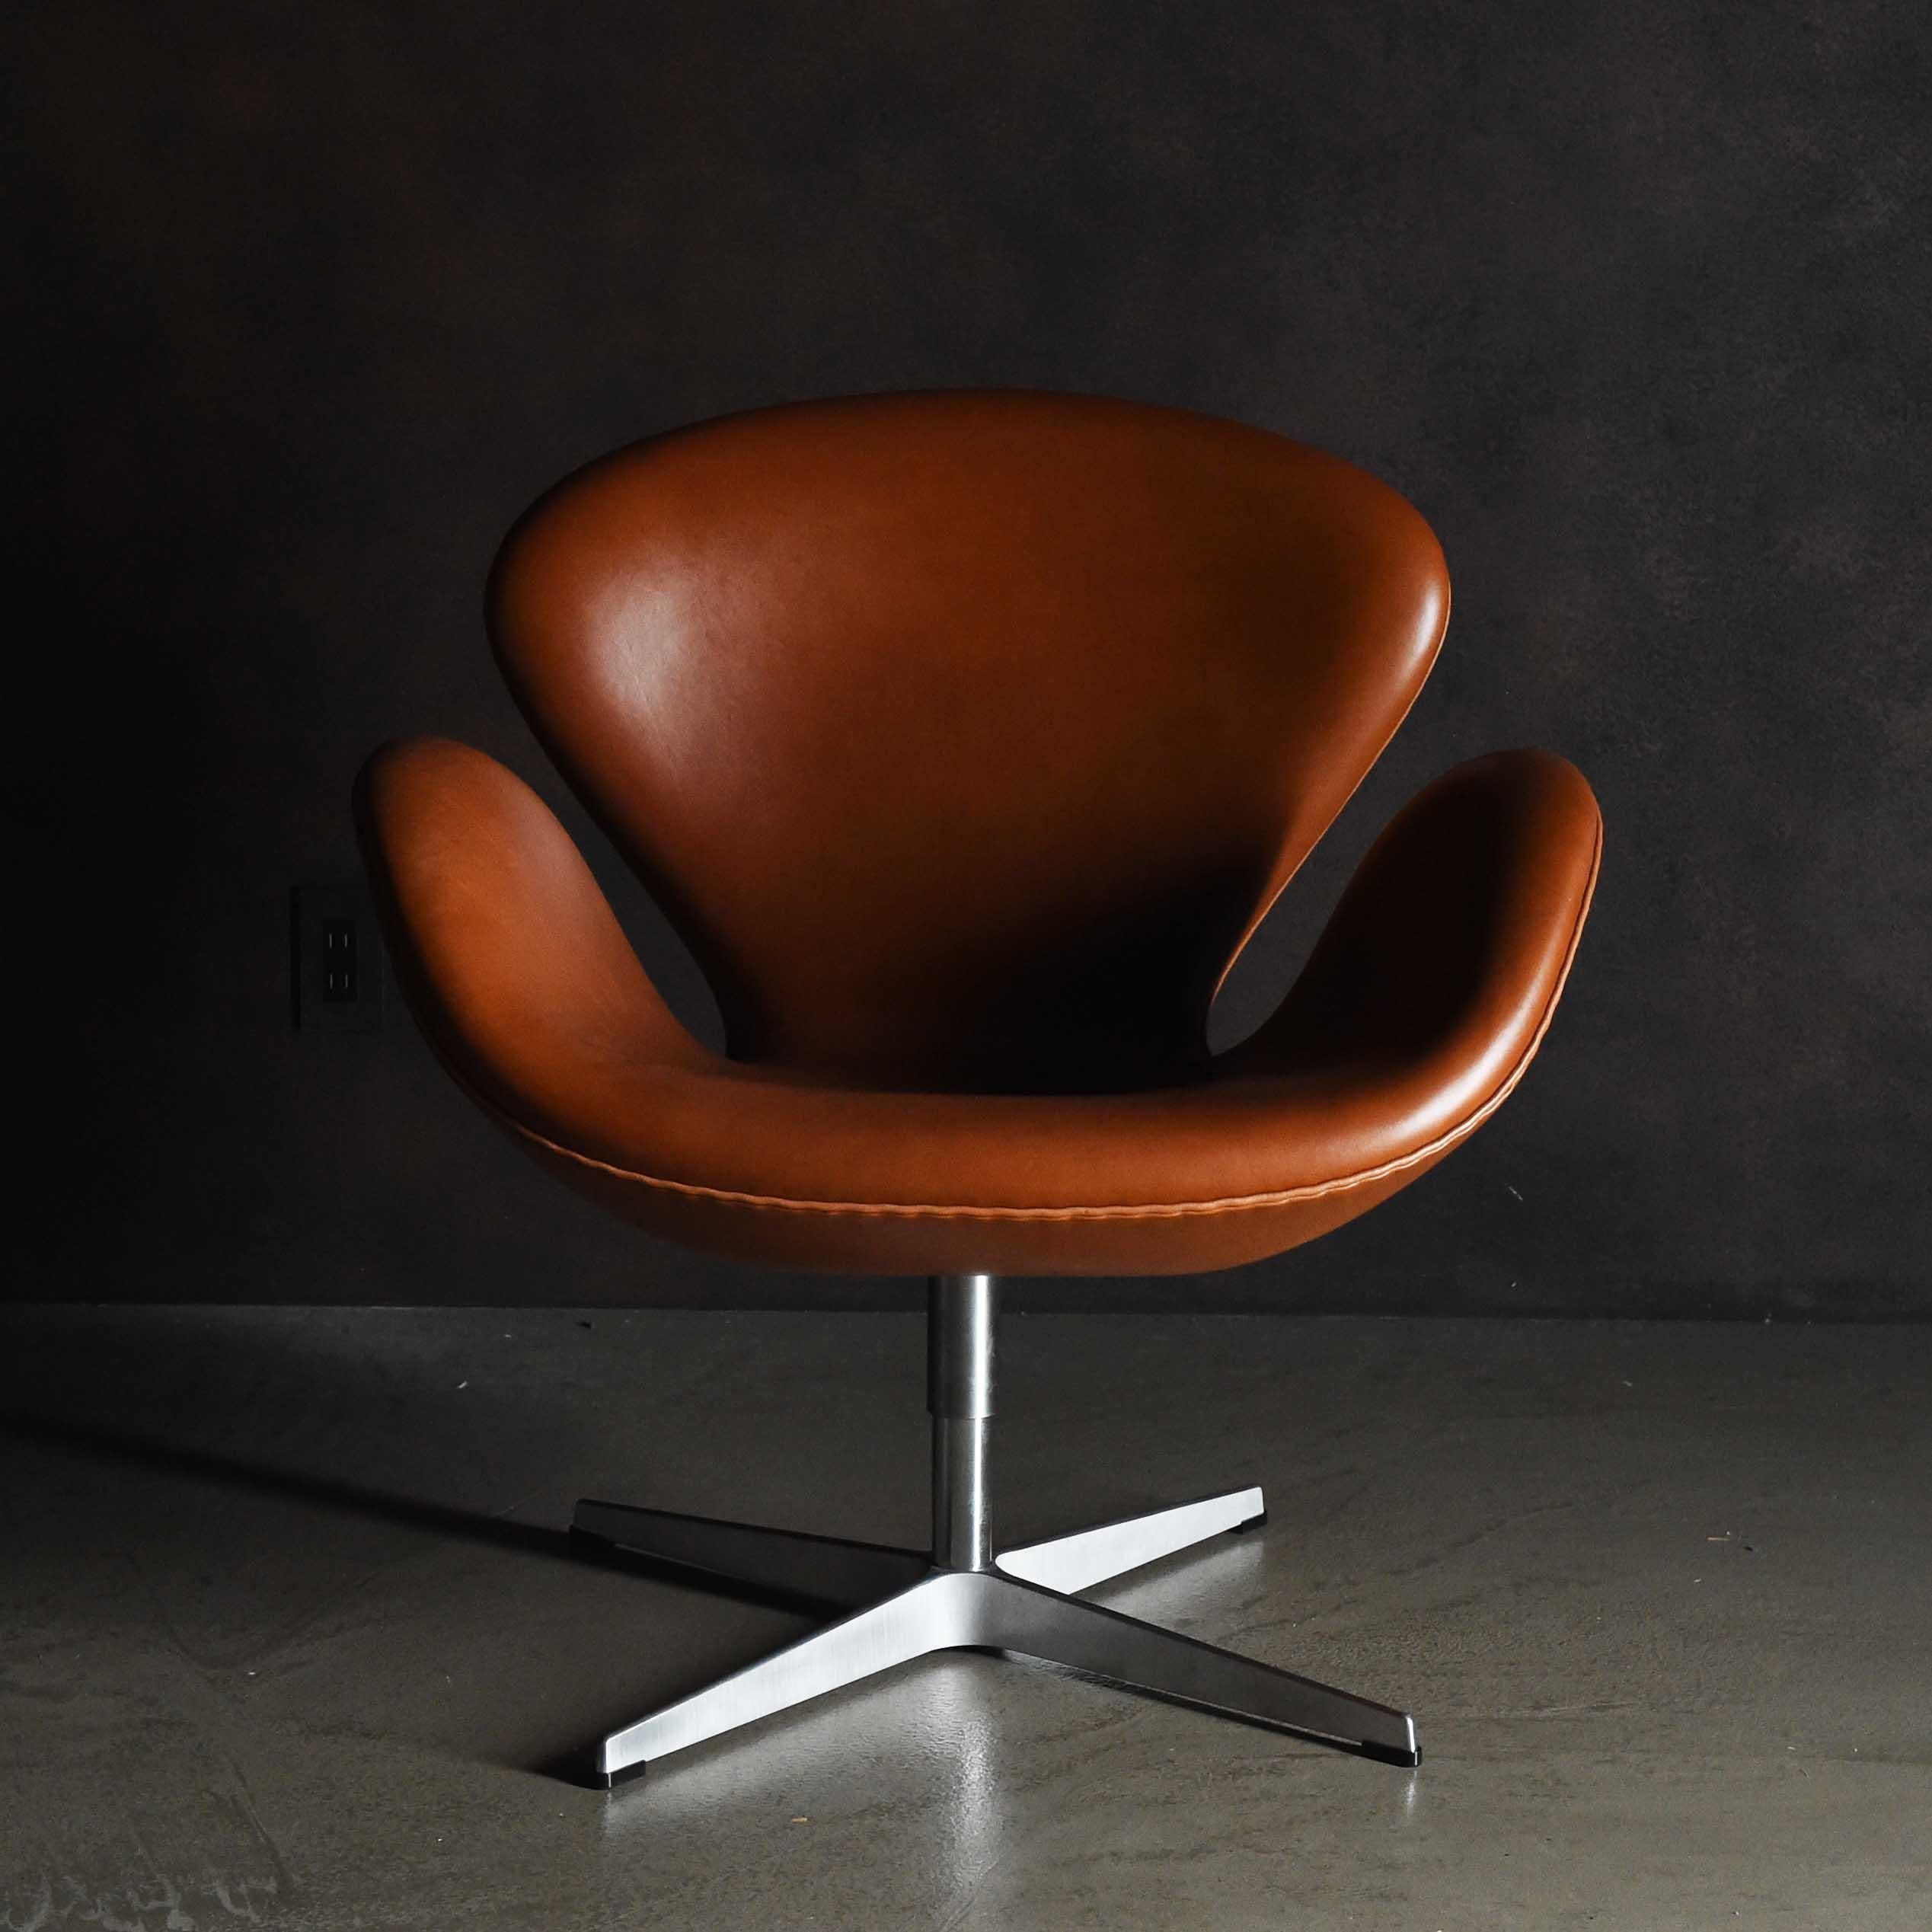 Der Swan Chair ist ein Loungesessel, der 1958 von Arne Jacobsen für die Lobby und den Loungebereich des SAS Royal Hotels in Kopenhagen entworfen wurde. Die Form des Stuhls, die nur aus Kurven besteht, ist einfach und unverwechselbar und vermittelt